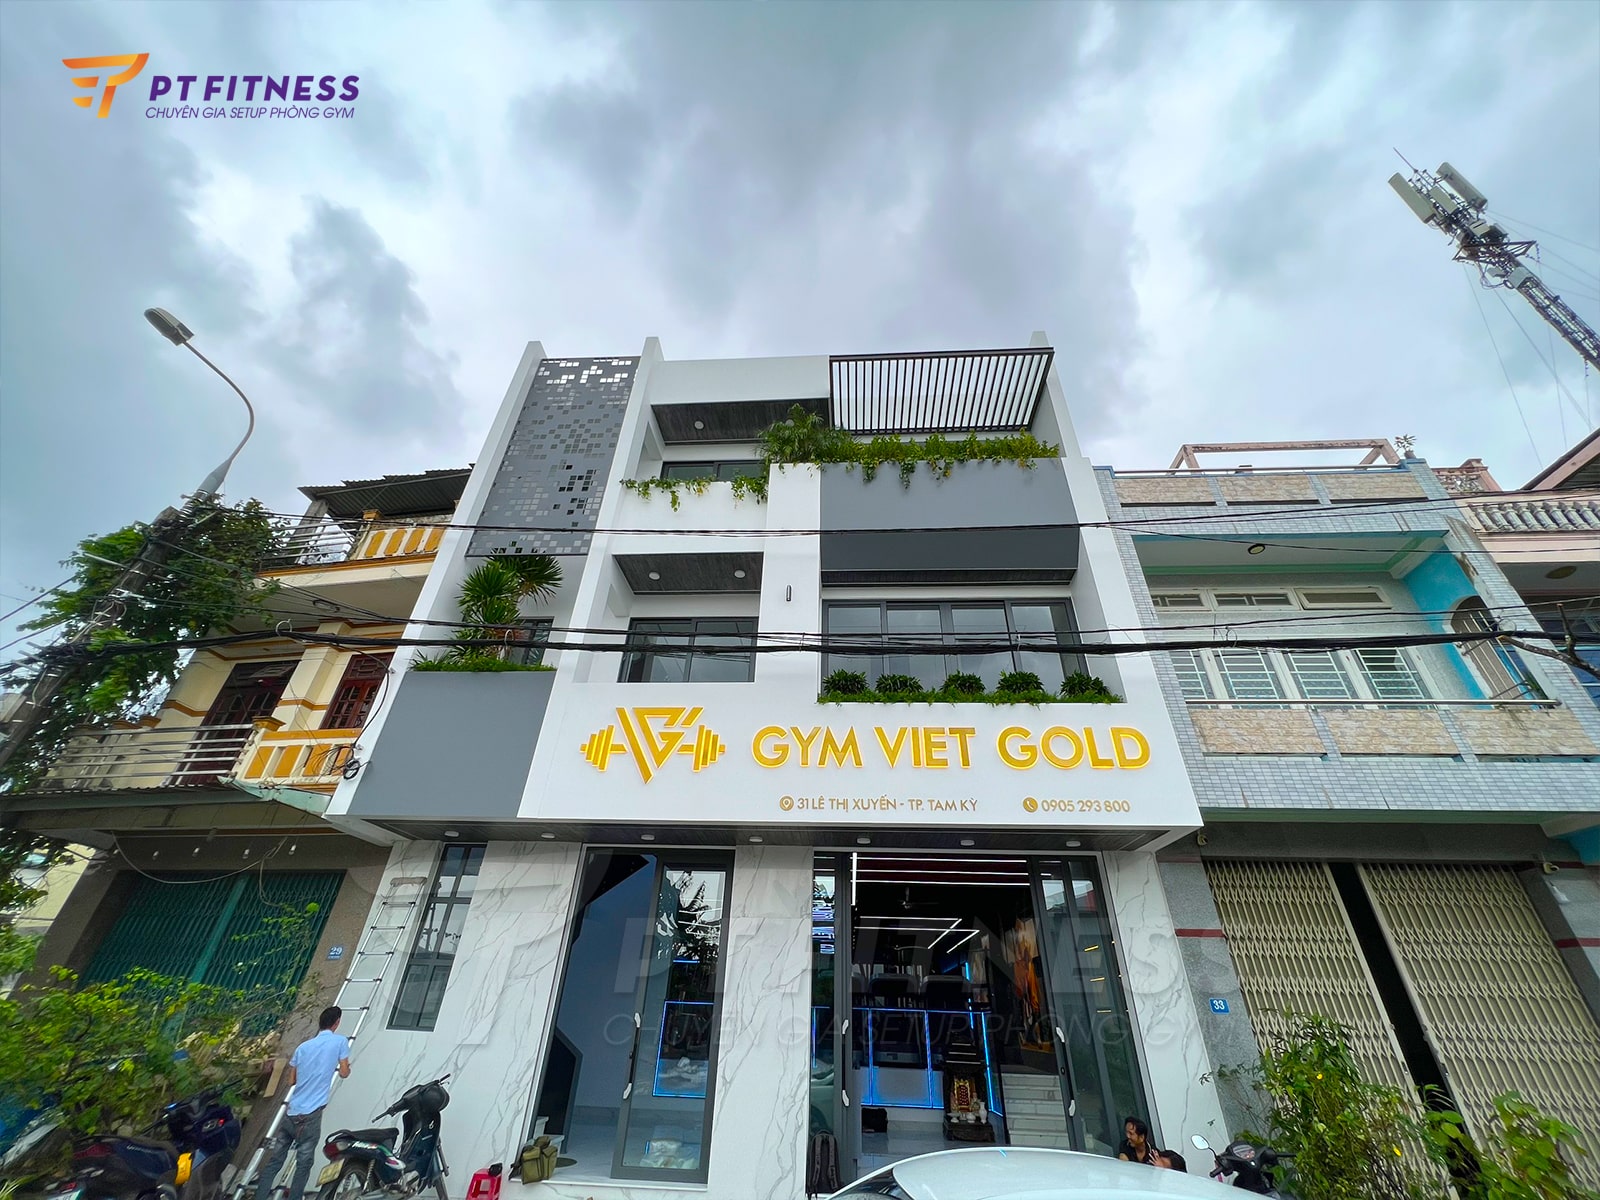 Phòng tập Gym Viet Gold tại Quảng Nam